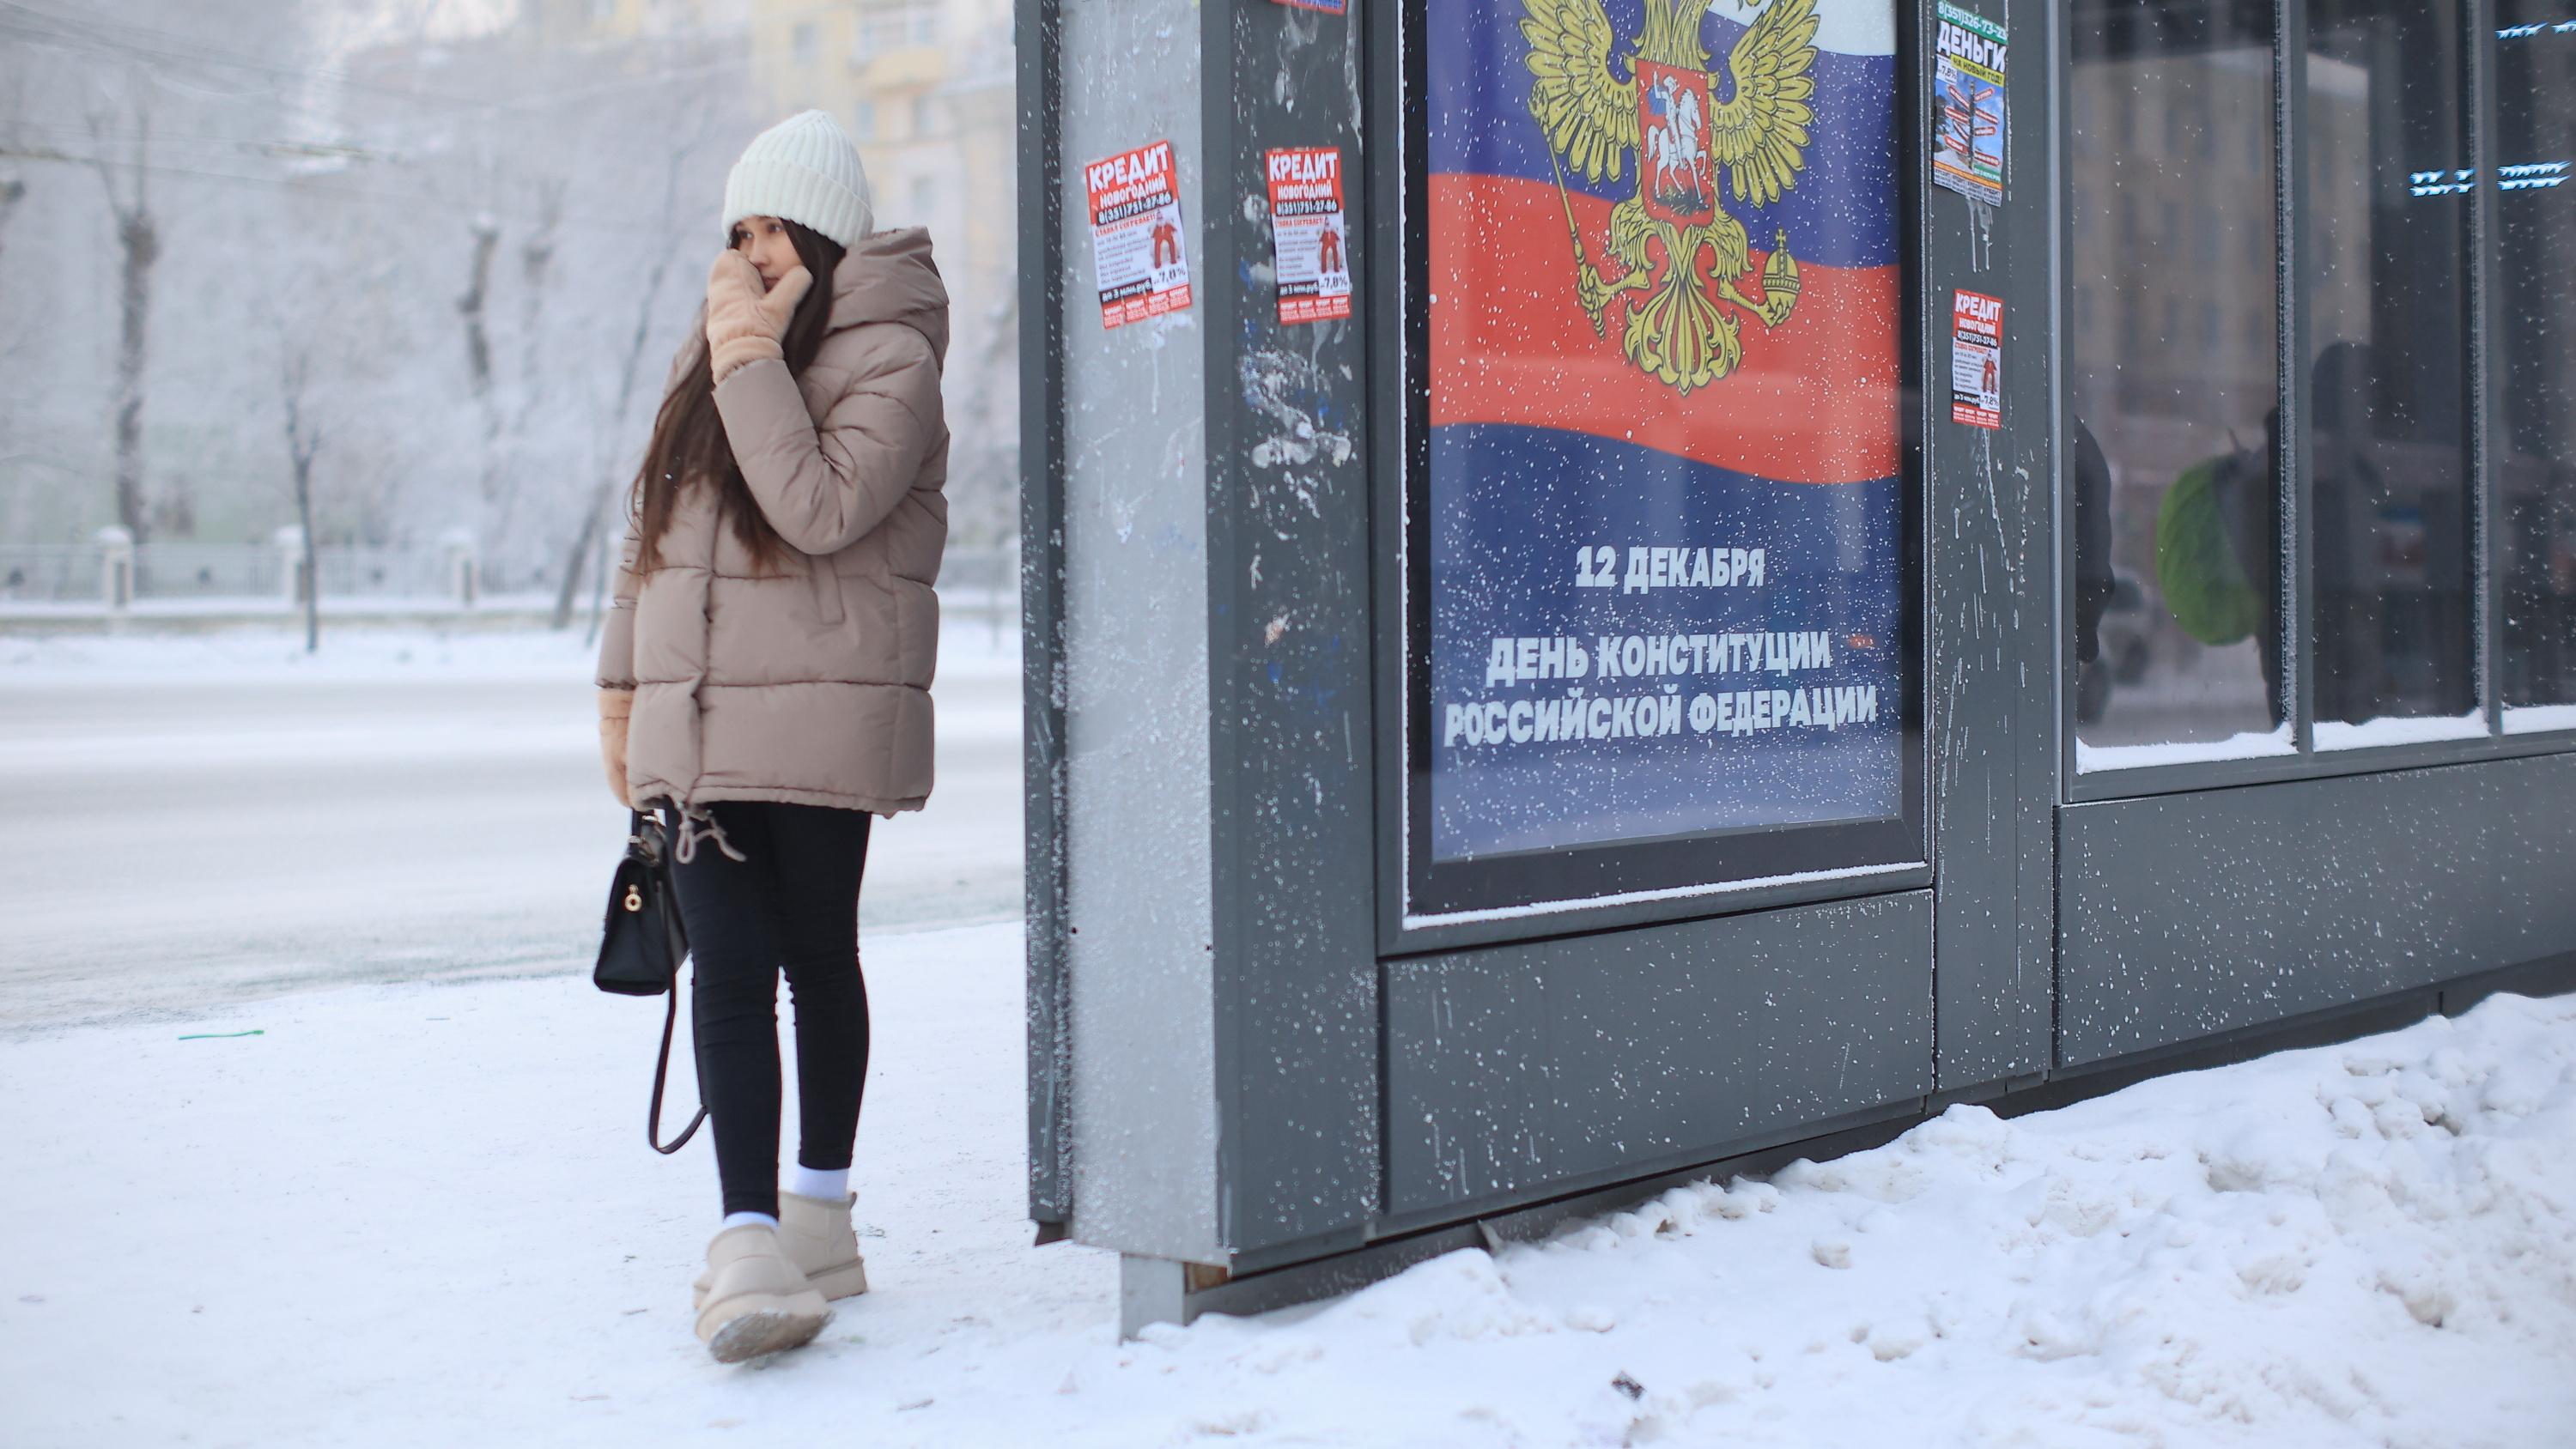 Отмененные уроки, холод в квартирах и дома без света: как Челябинск пережил холодный вторник